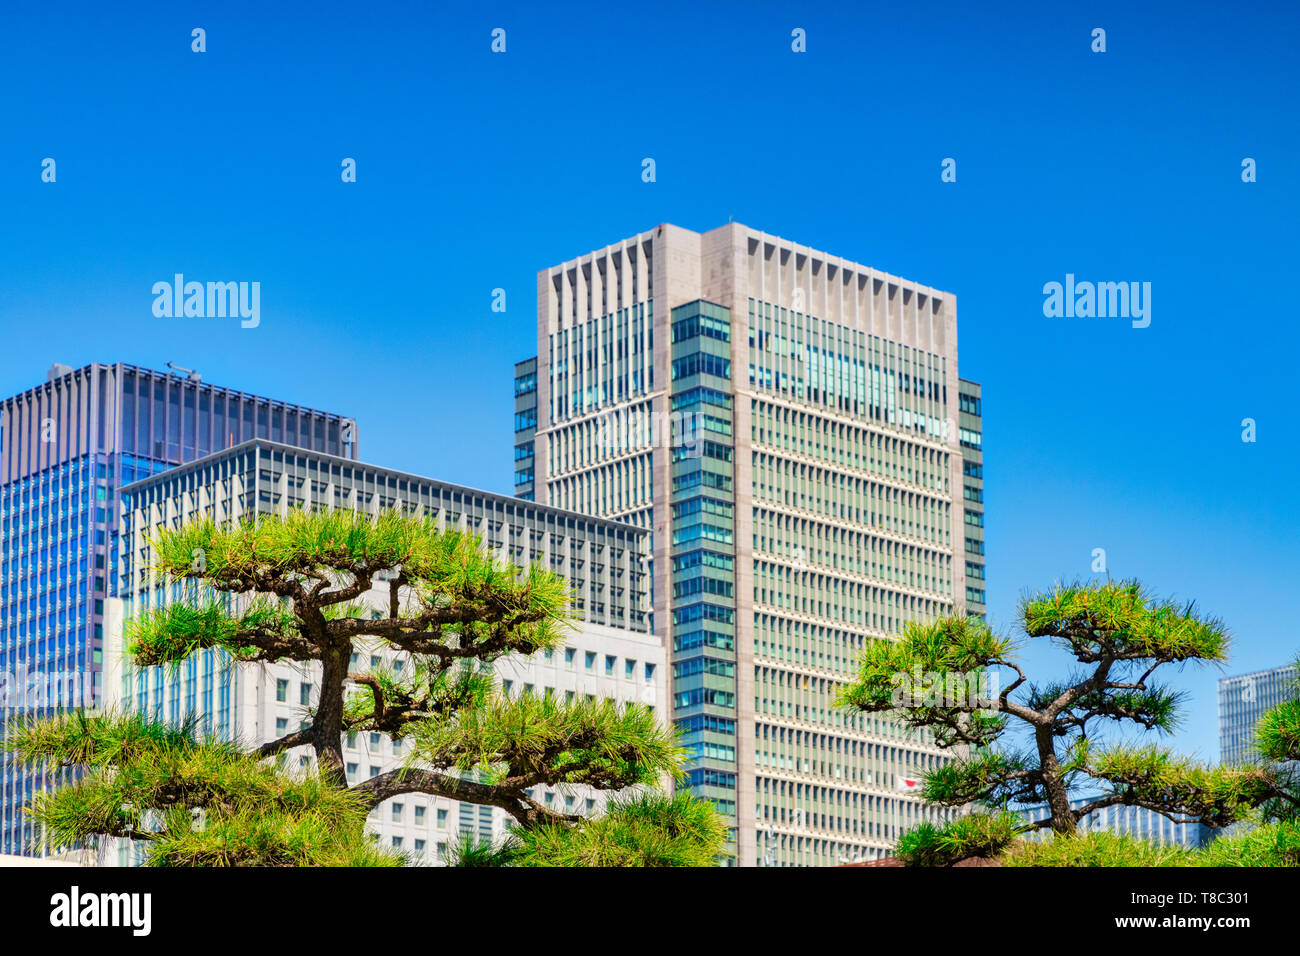 Une ville typique à Tokyo, au Japon, avec les gratte-ciel modernes compensée par des arbres topiaires. Se concentrer sur les arbres. Banque D'Images